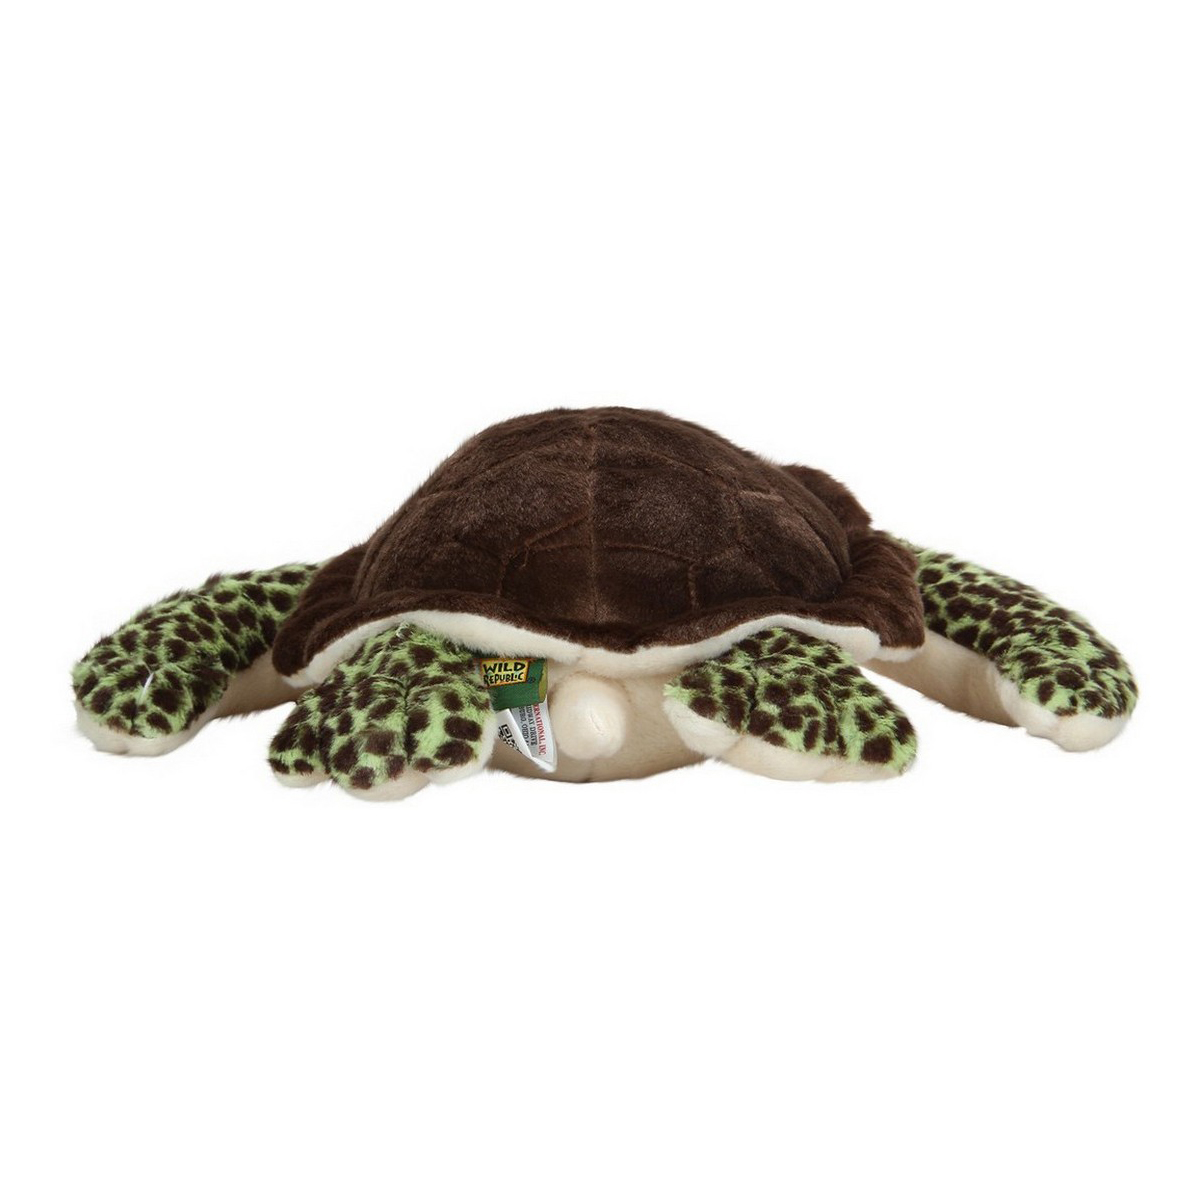 Wild Republic Turtle Stuffed Animal - 12